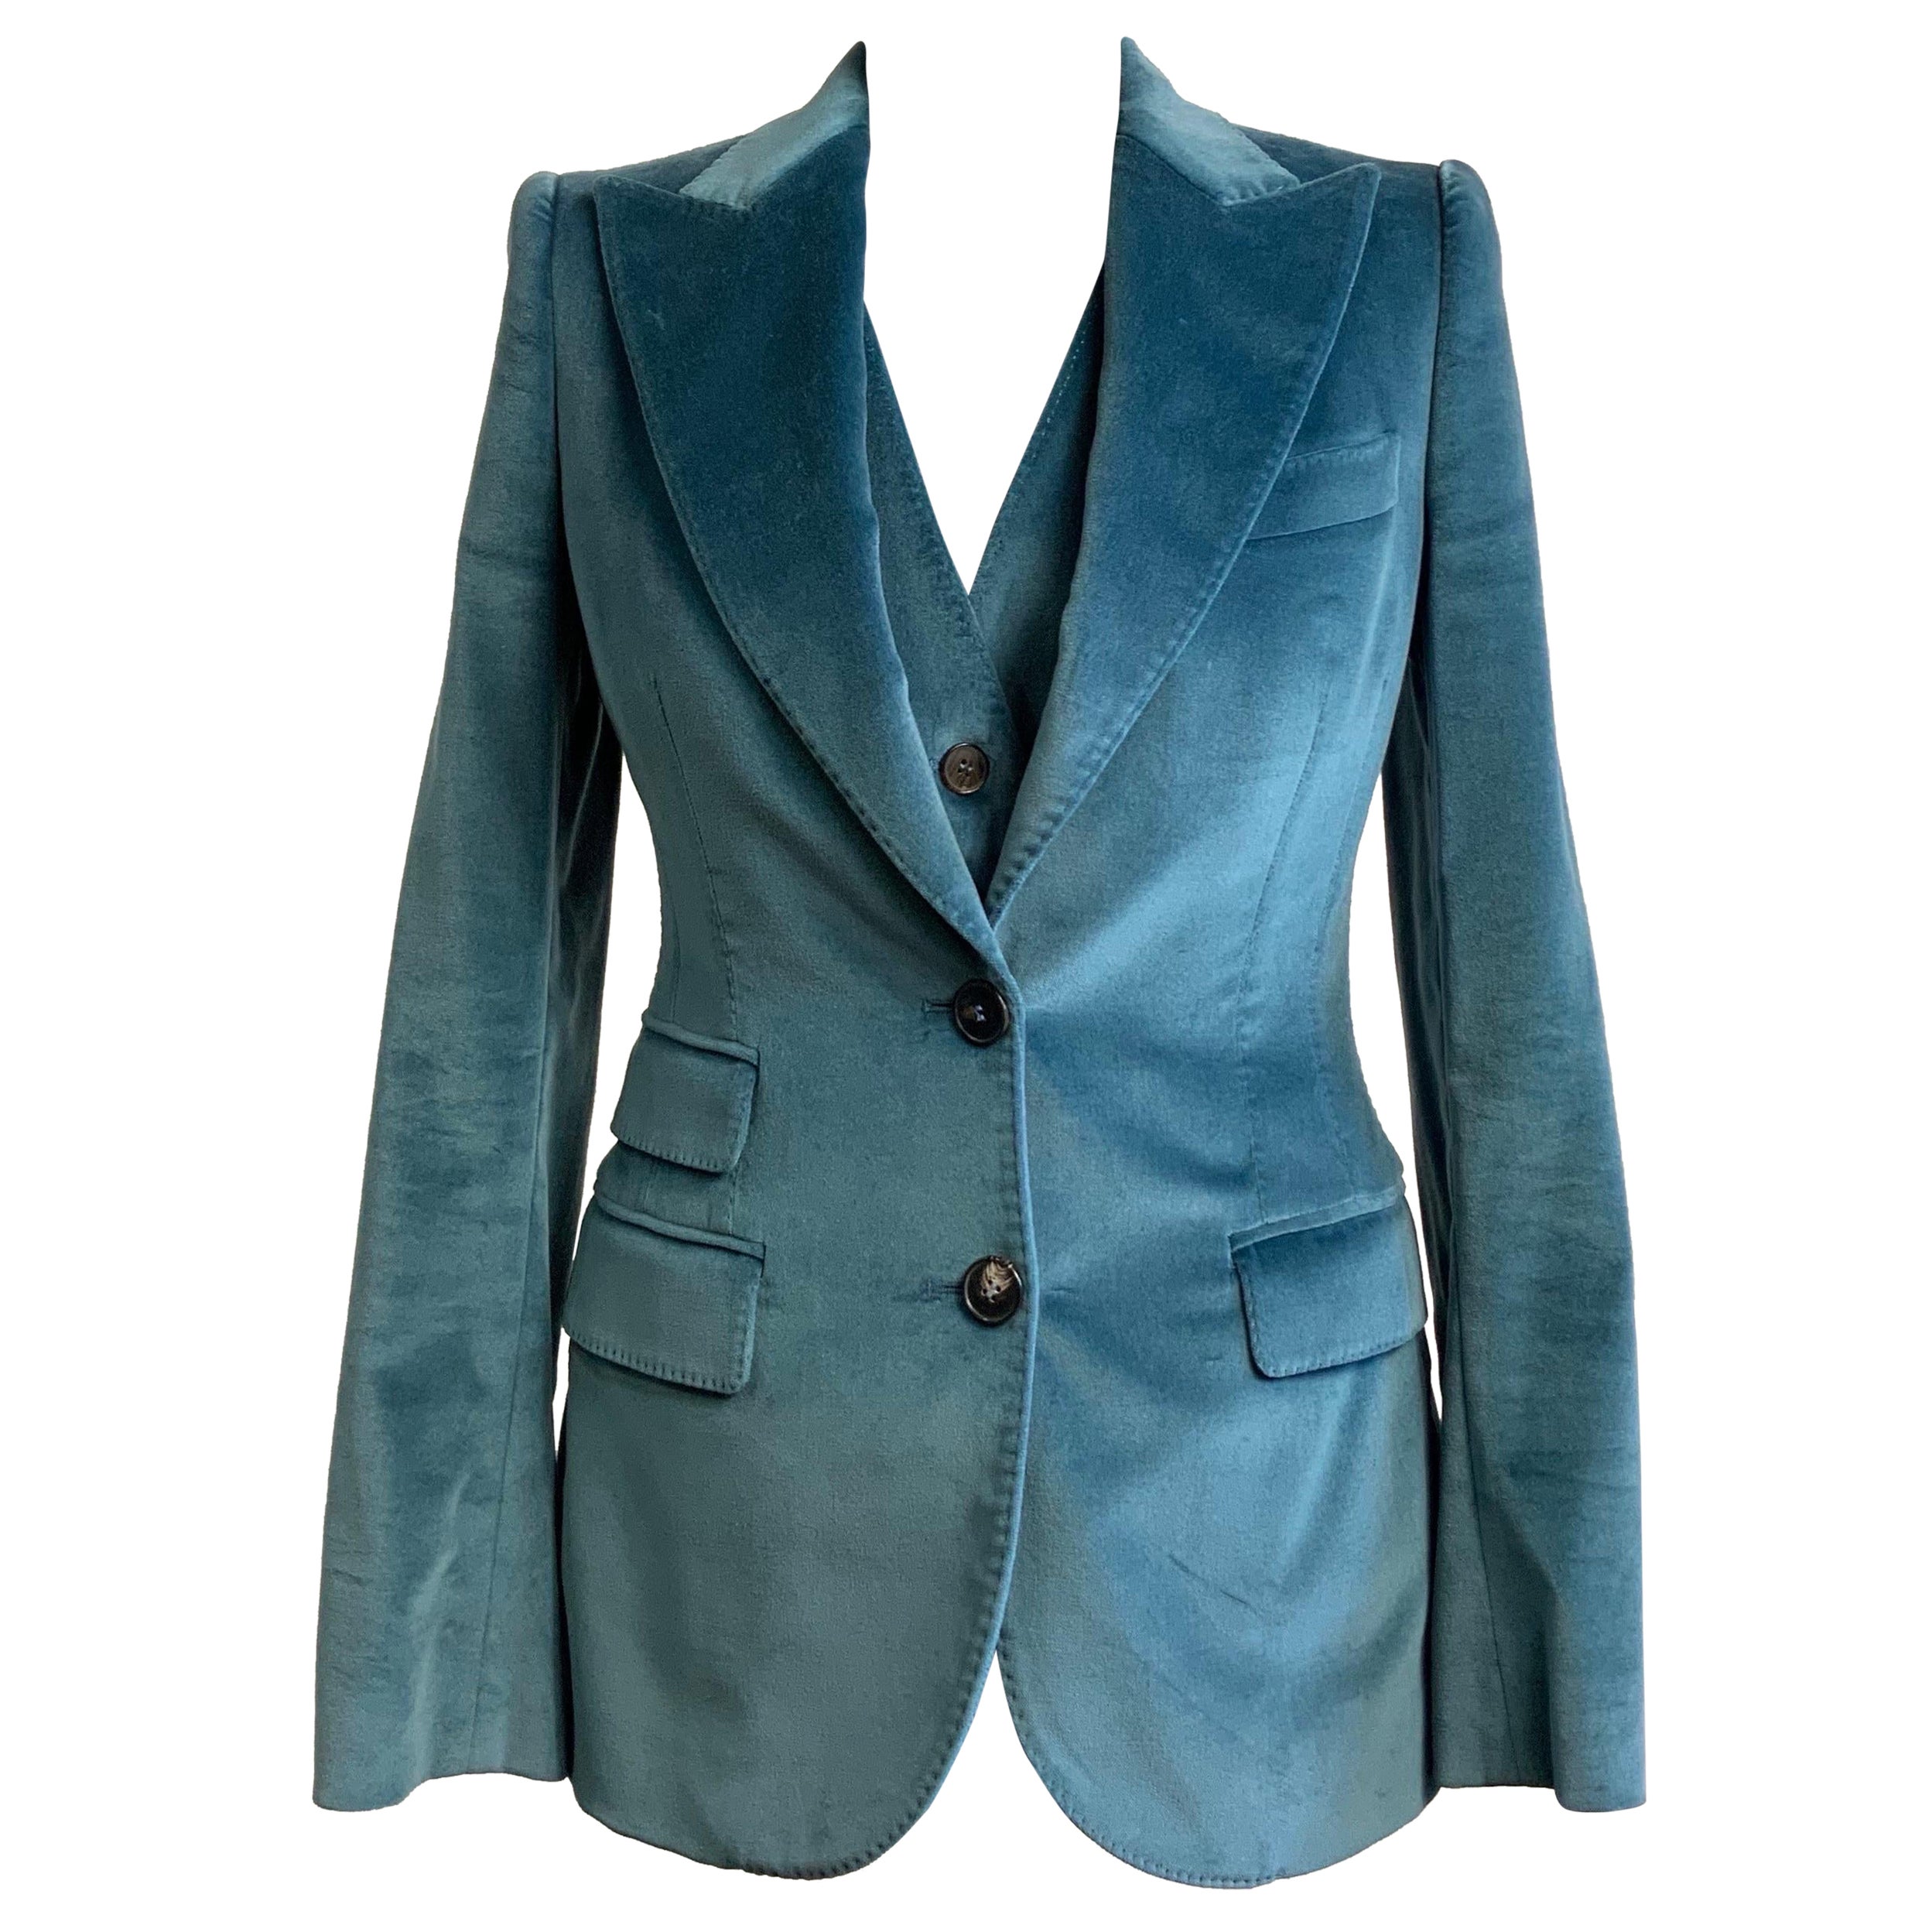 Dolce and Gabbana light blue jacket + vest set. For Sale